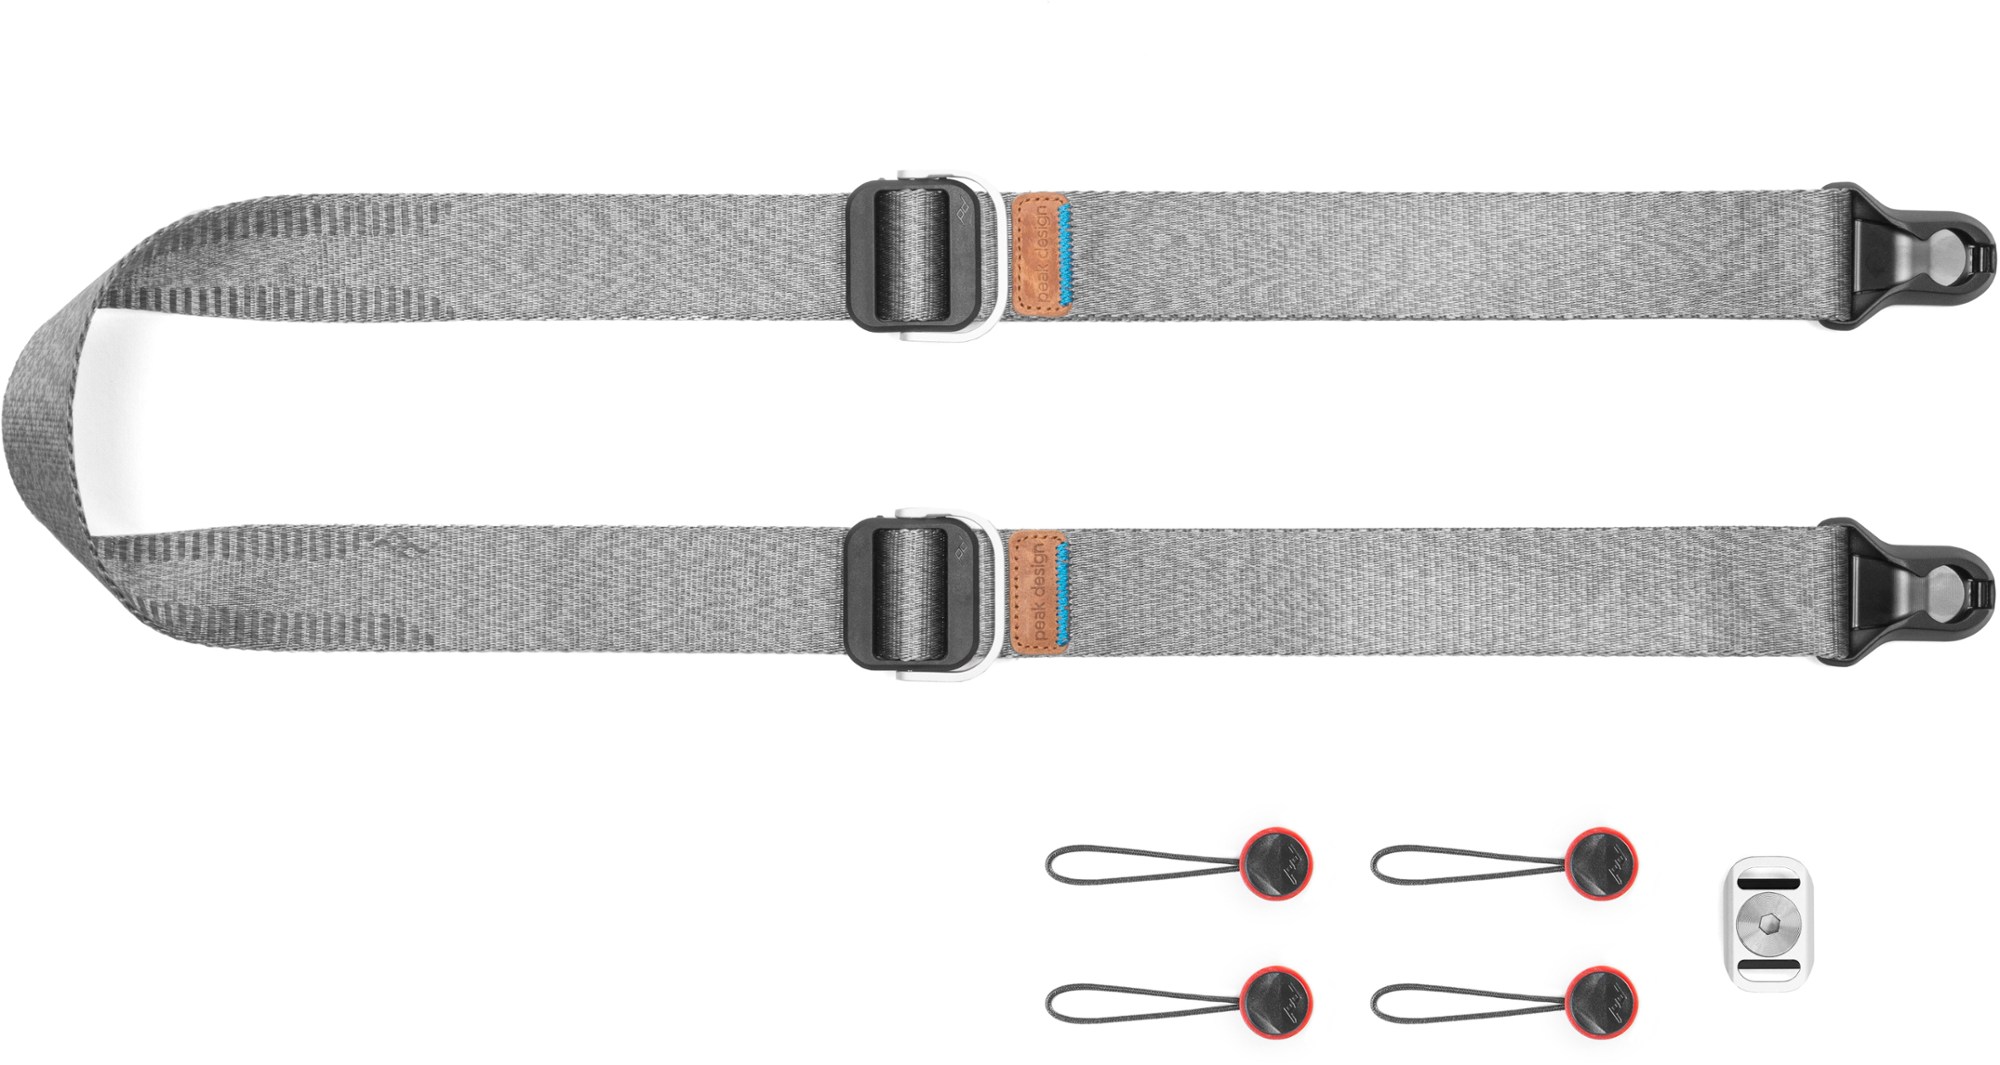 Ремень для камеры Slide Lite Strap 2.0 Peak Design, серый ремень peak design wrist strap cuff v3 0 midnight на запястье